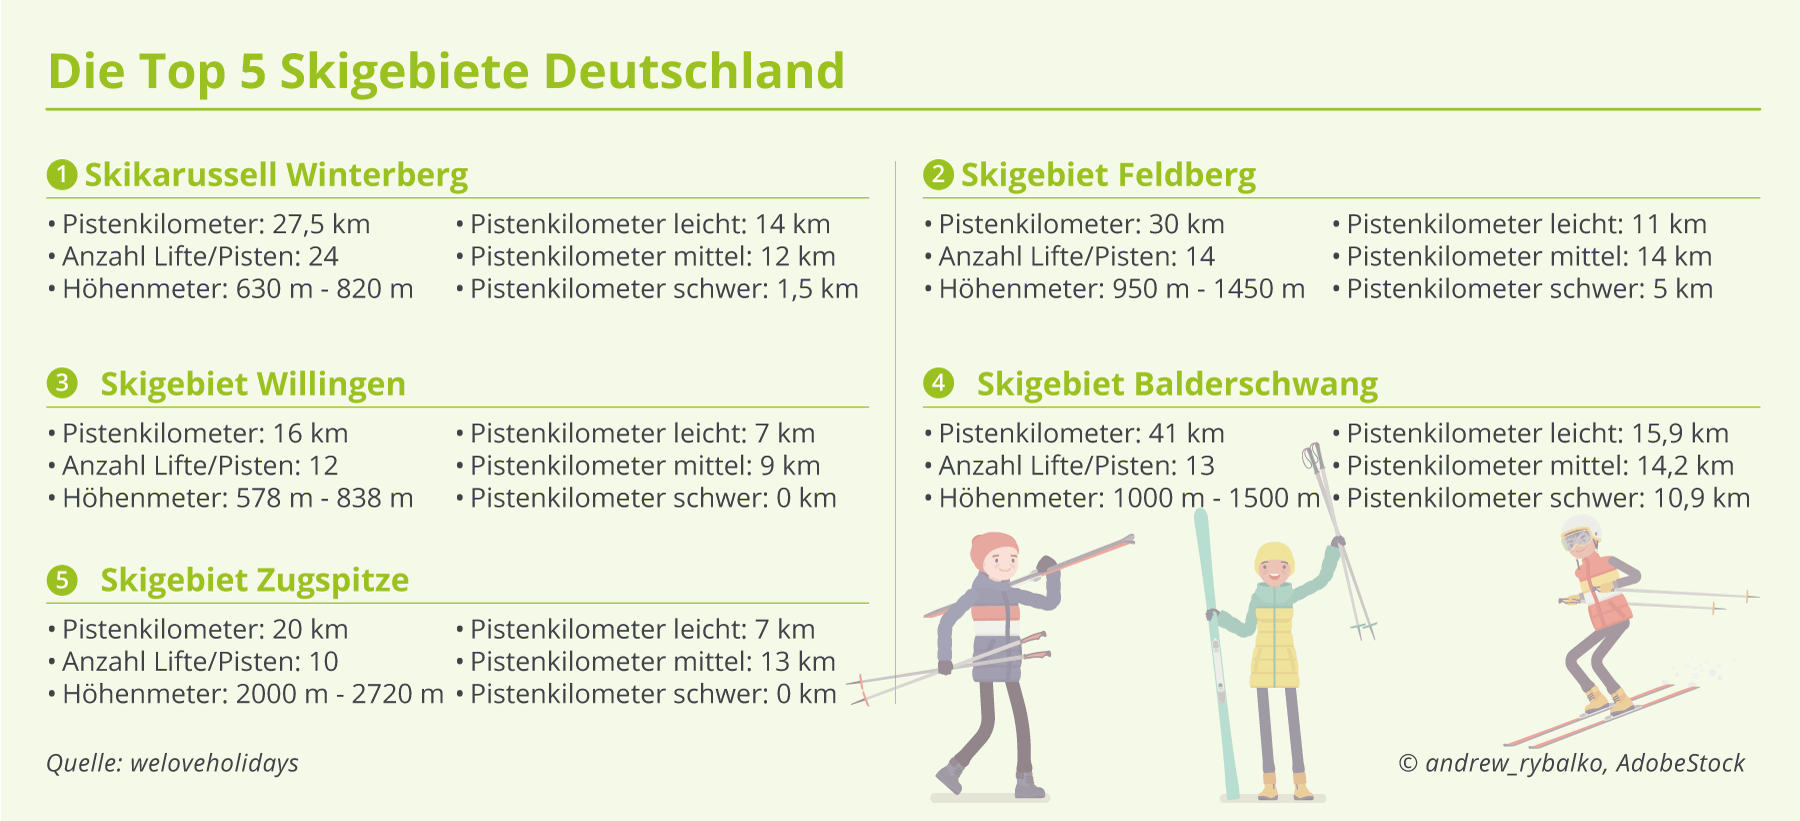 Dies sind die beliebtesten und preiswertesten Skigebiete in Deutschland und Europa